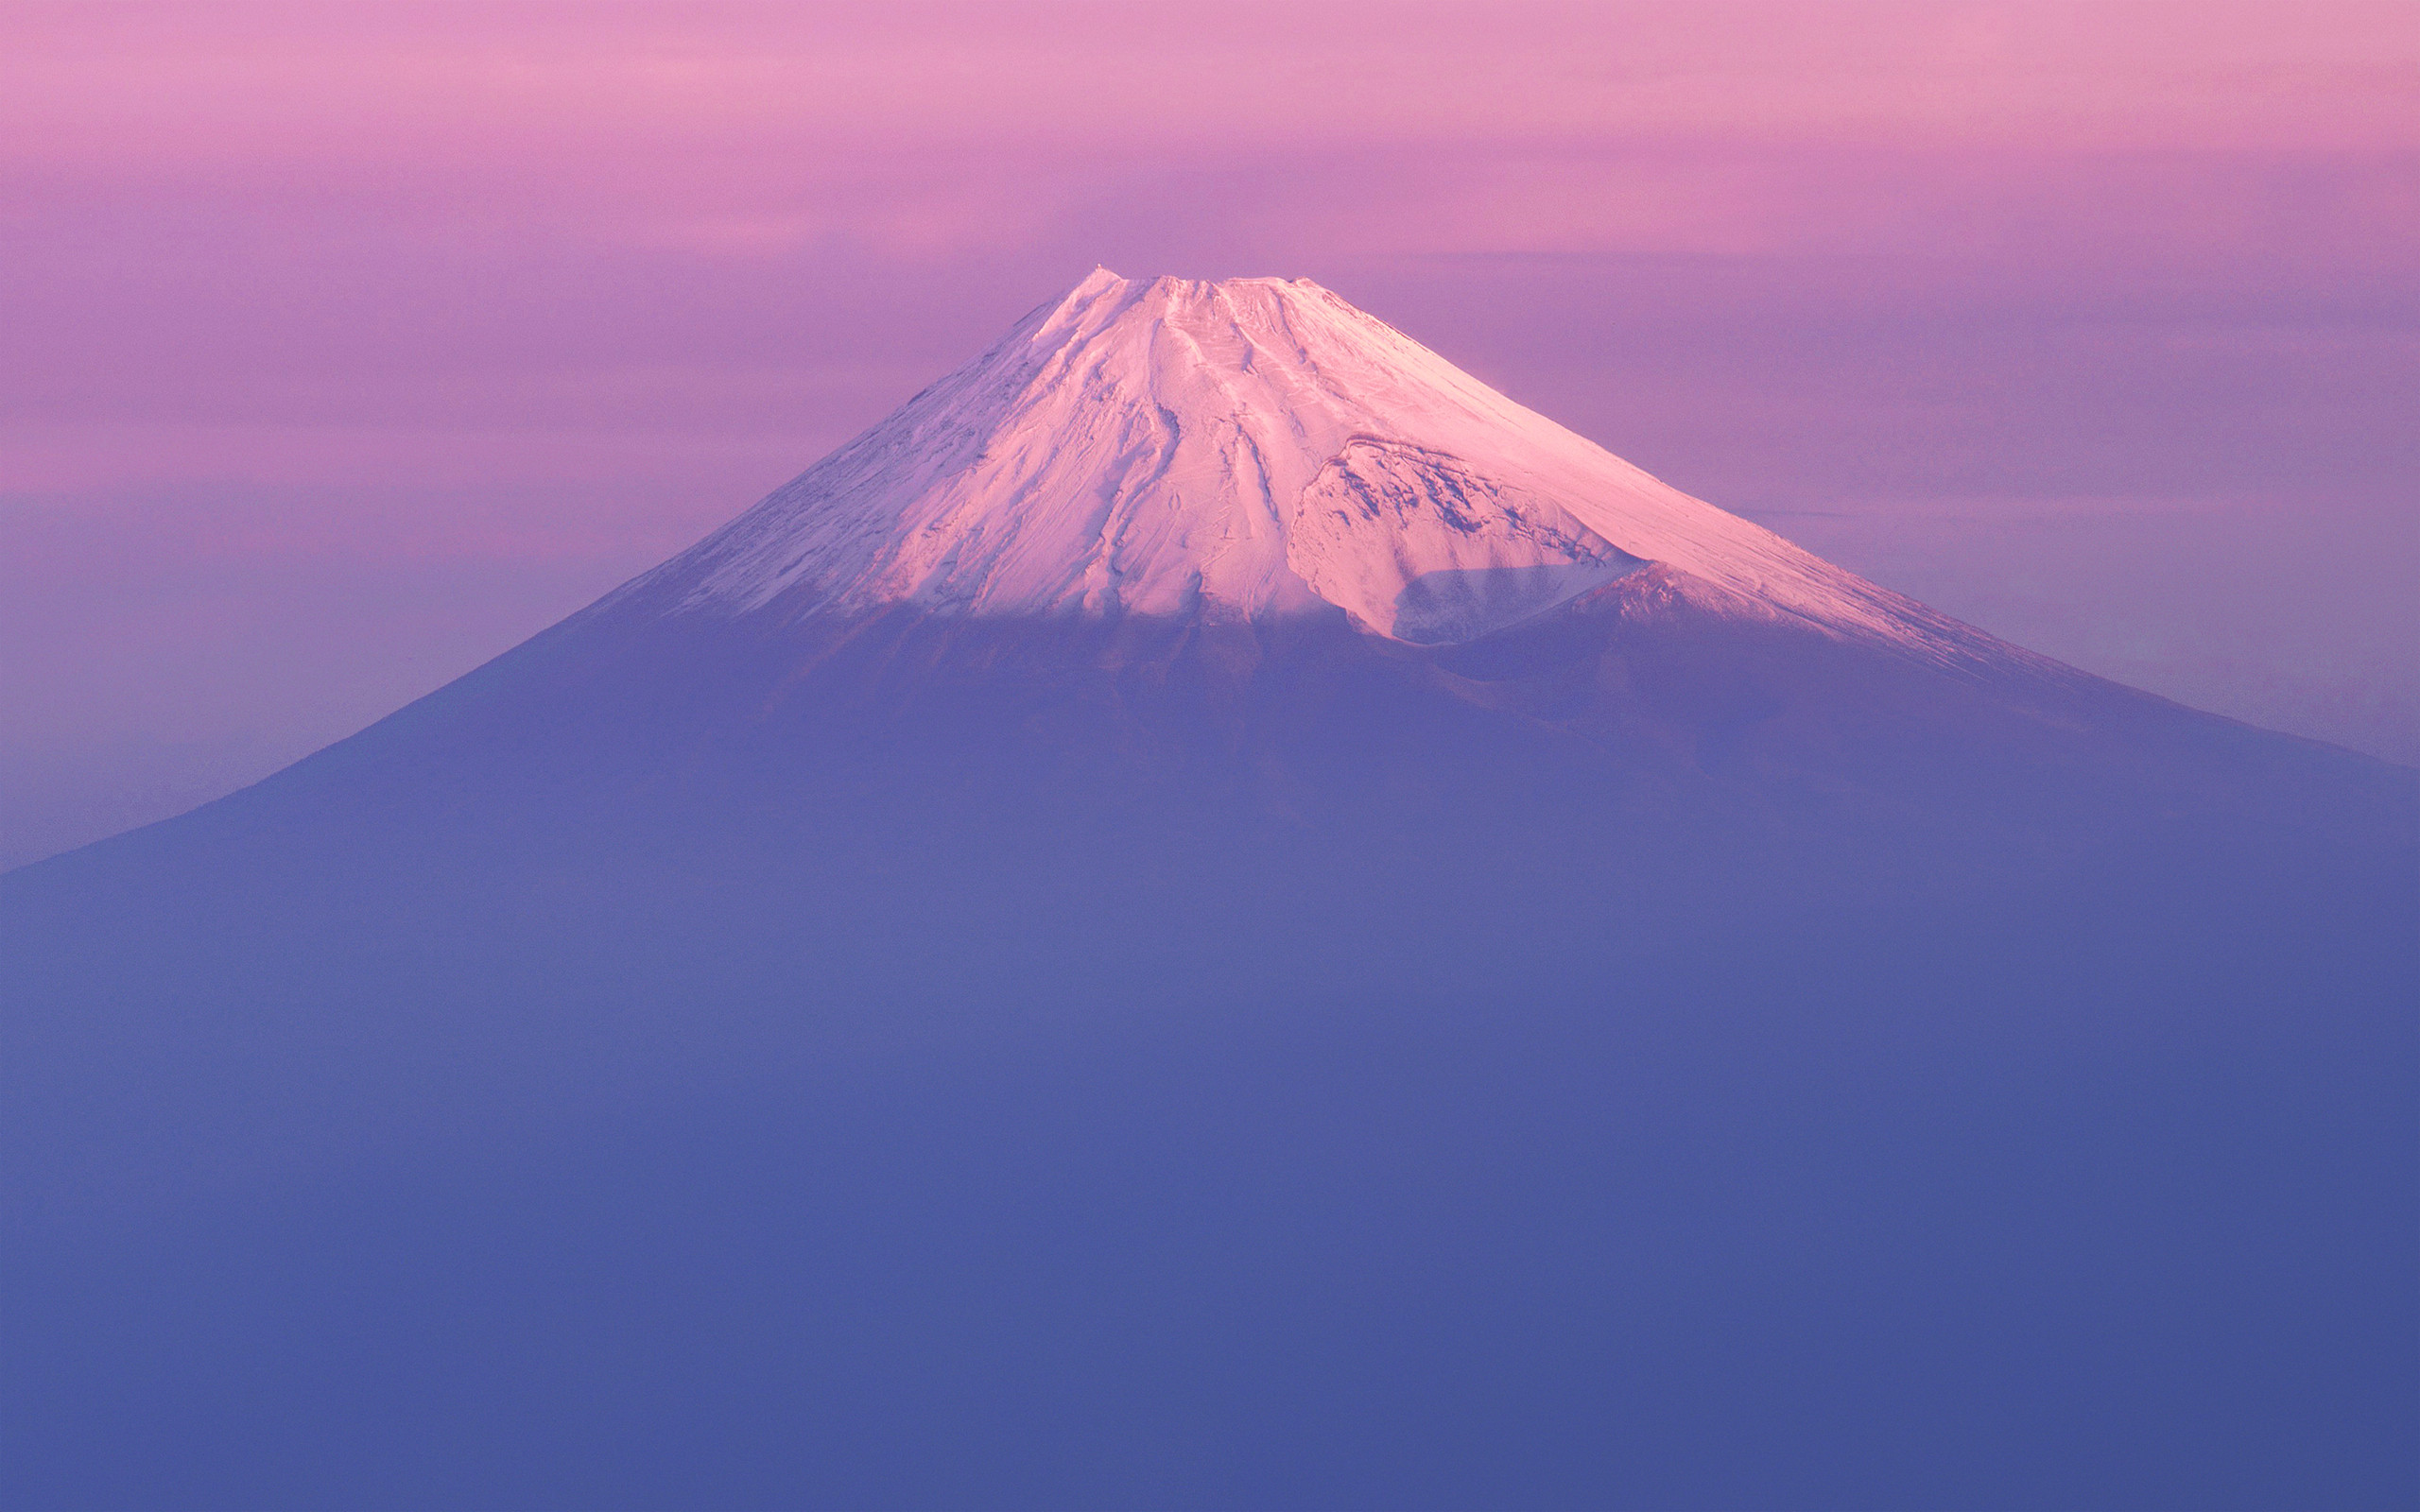 Mac Os X Lion Fuji Mountain Wallpaper Osxdaily